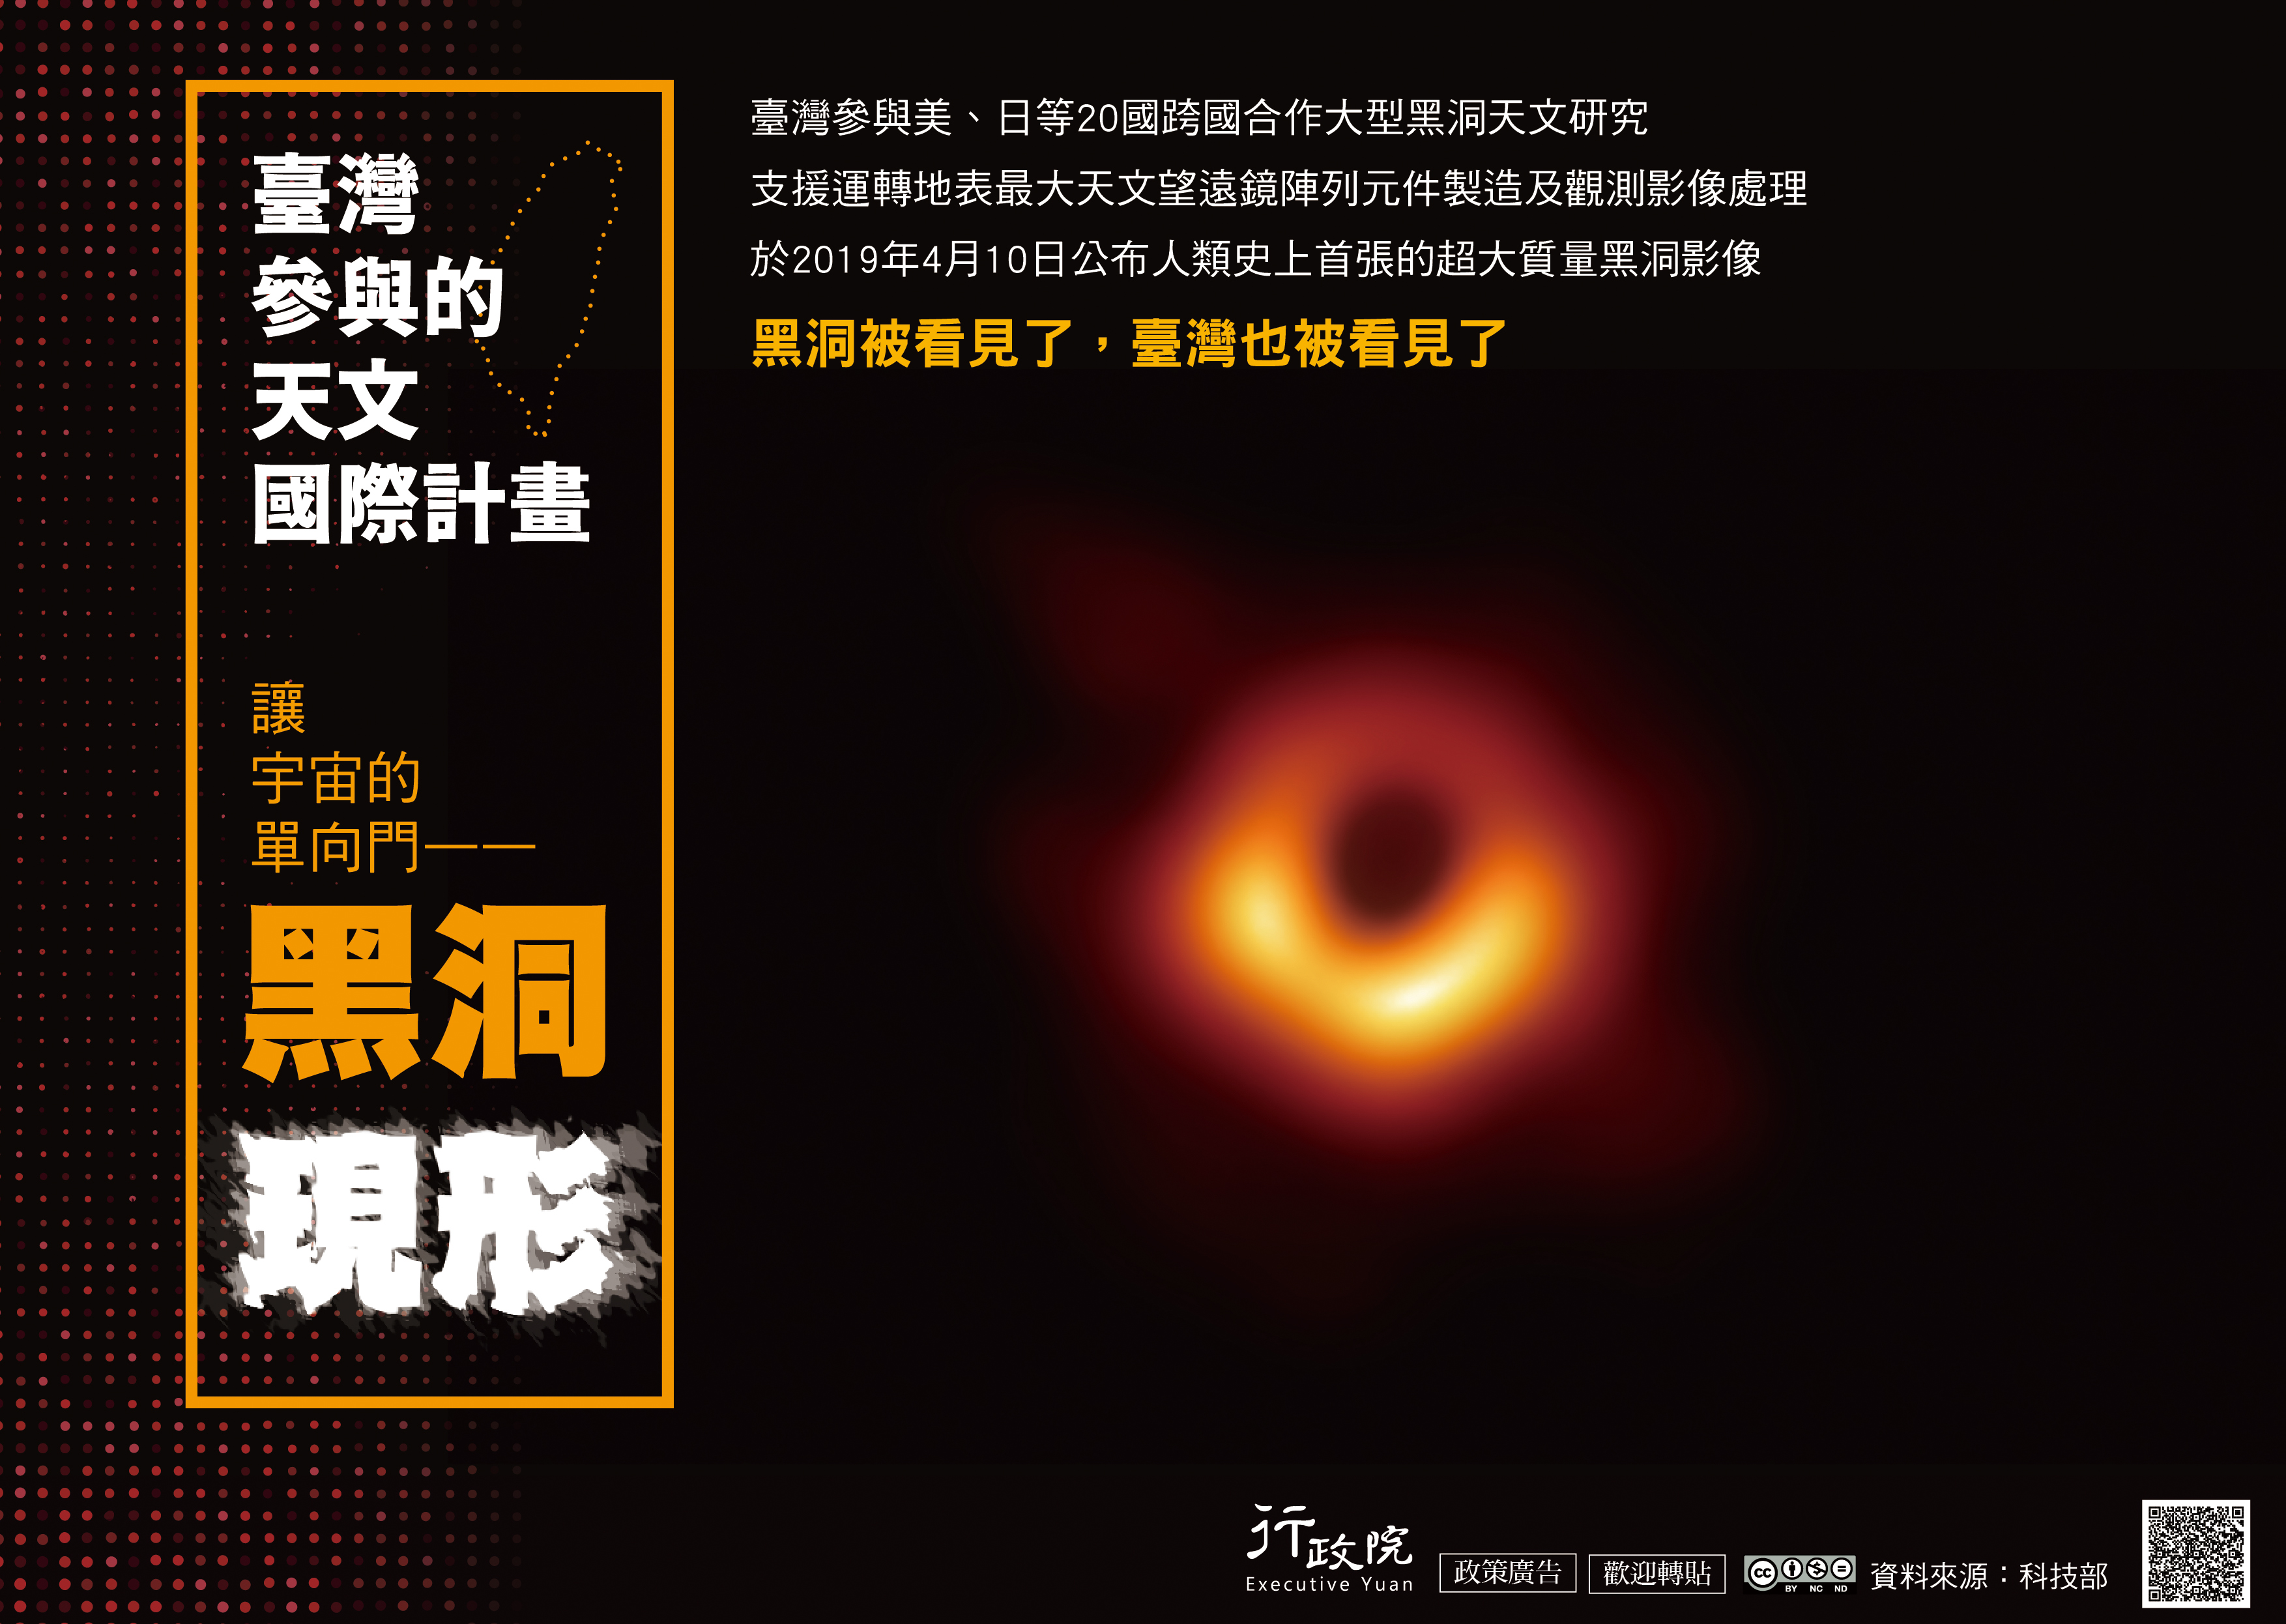 「從黑洞研究看見臺灣」